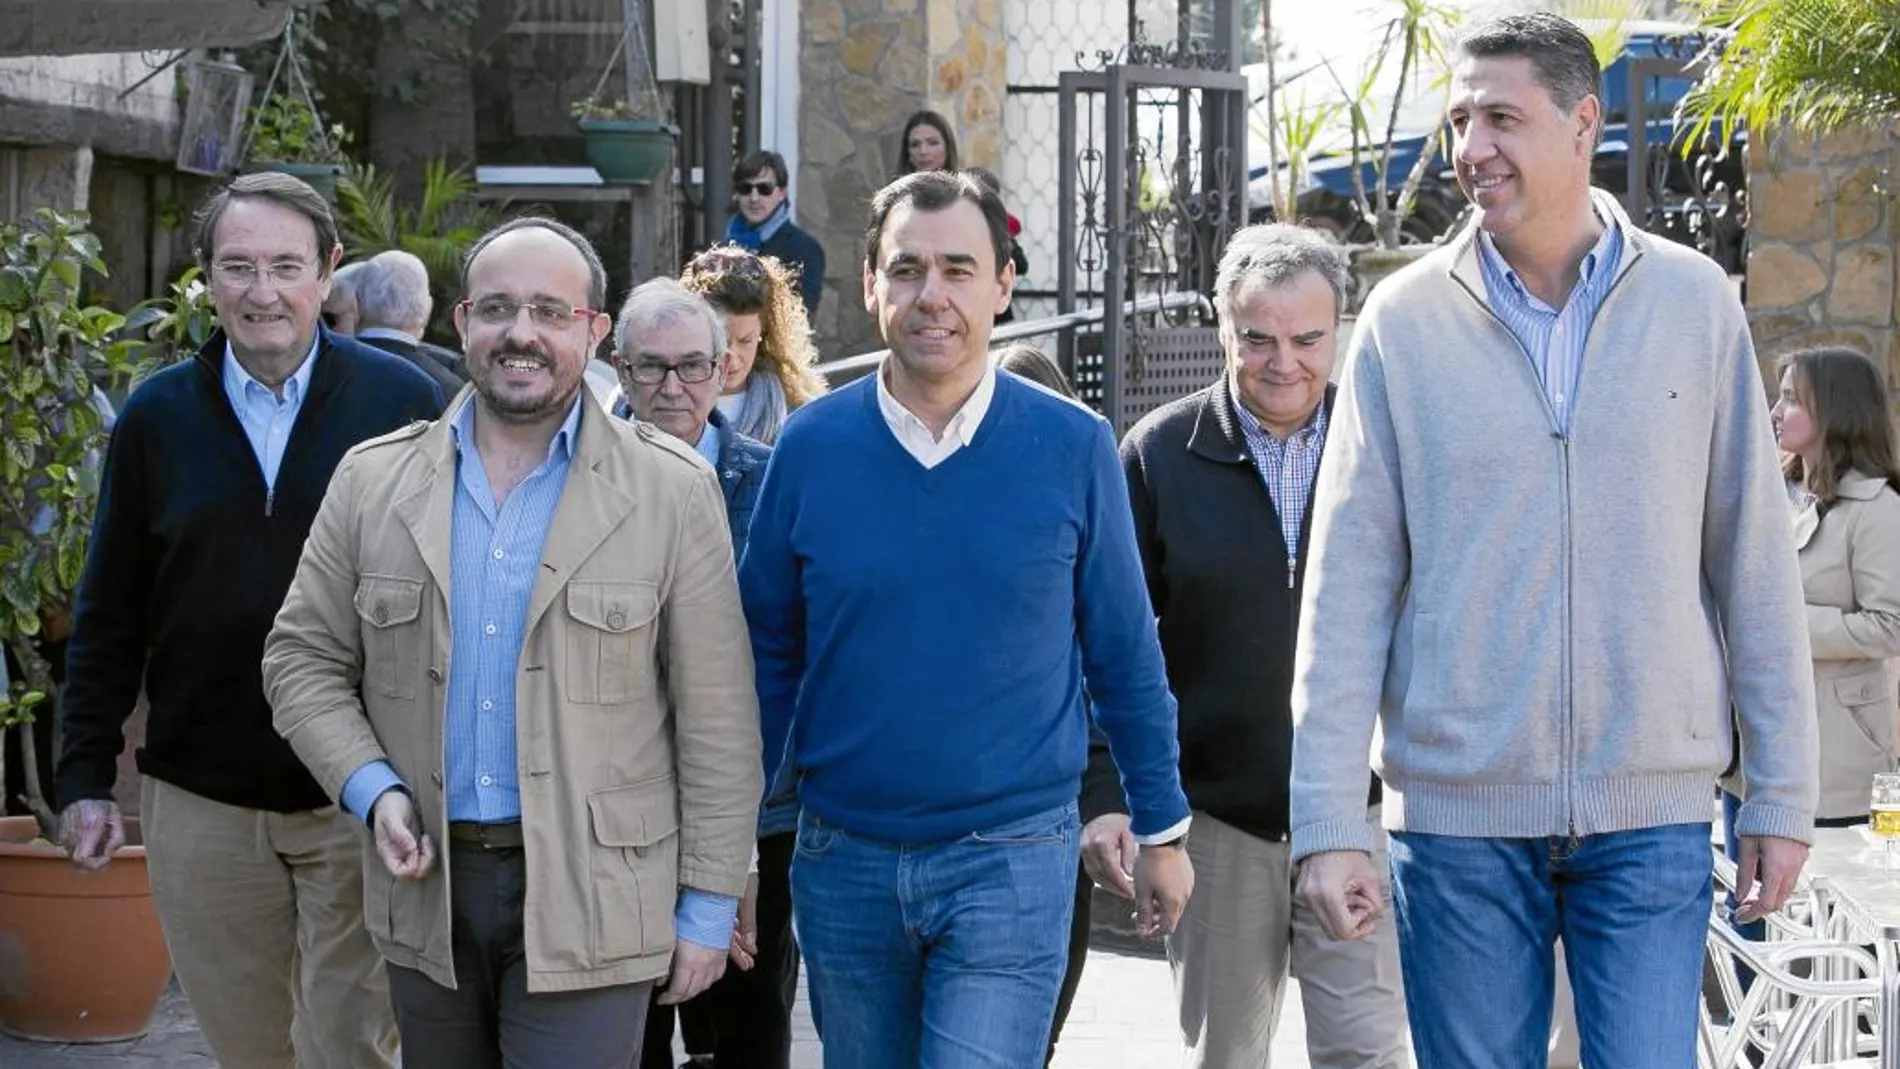 Martínez-Maillo, en el centro de la imagen, participó ayer en una calçotada organizada por el PP de Tarragona en Alcover